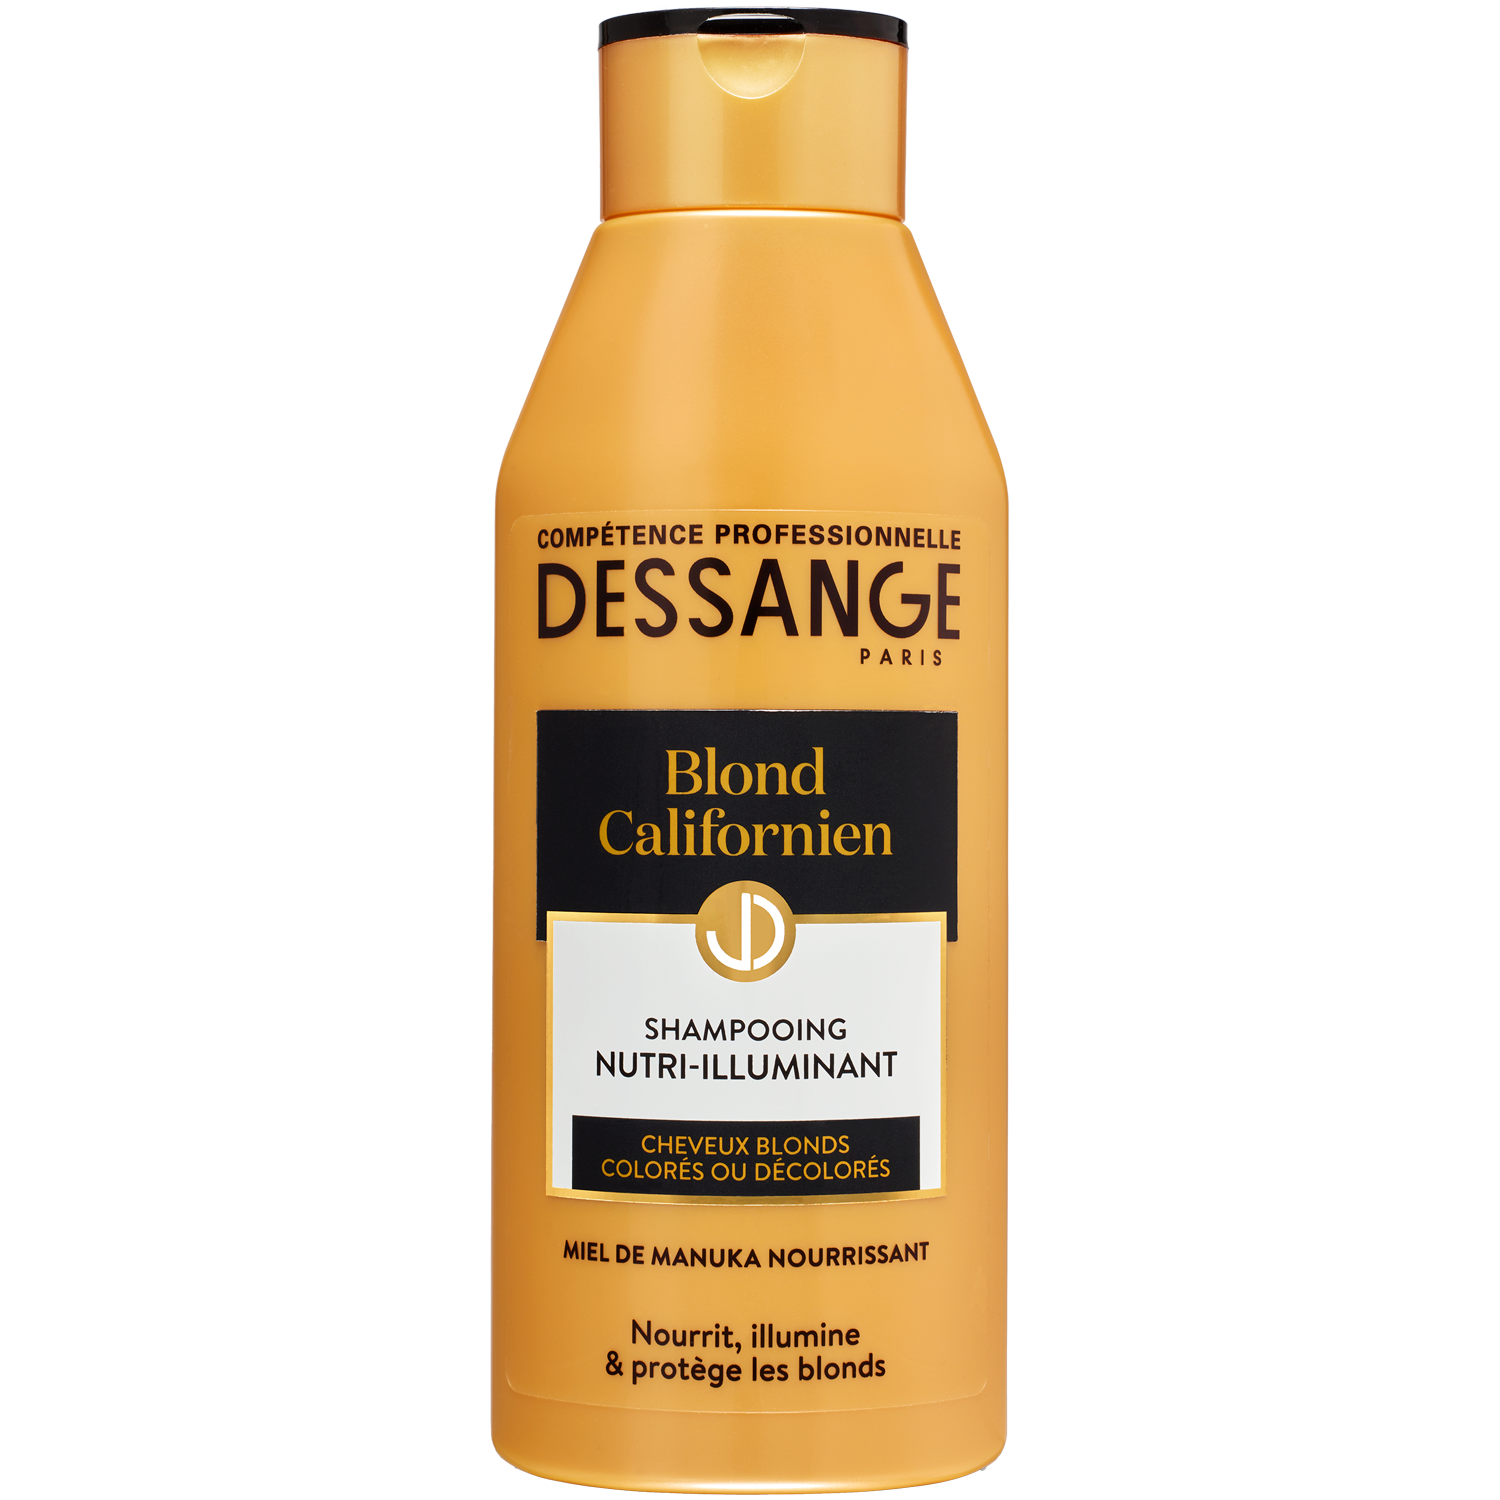 Dessange Professional Hair Luxury Blond Californien szampon do włosów blond,  250 ml | hebe.pl